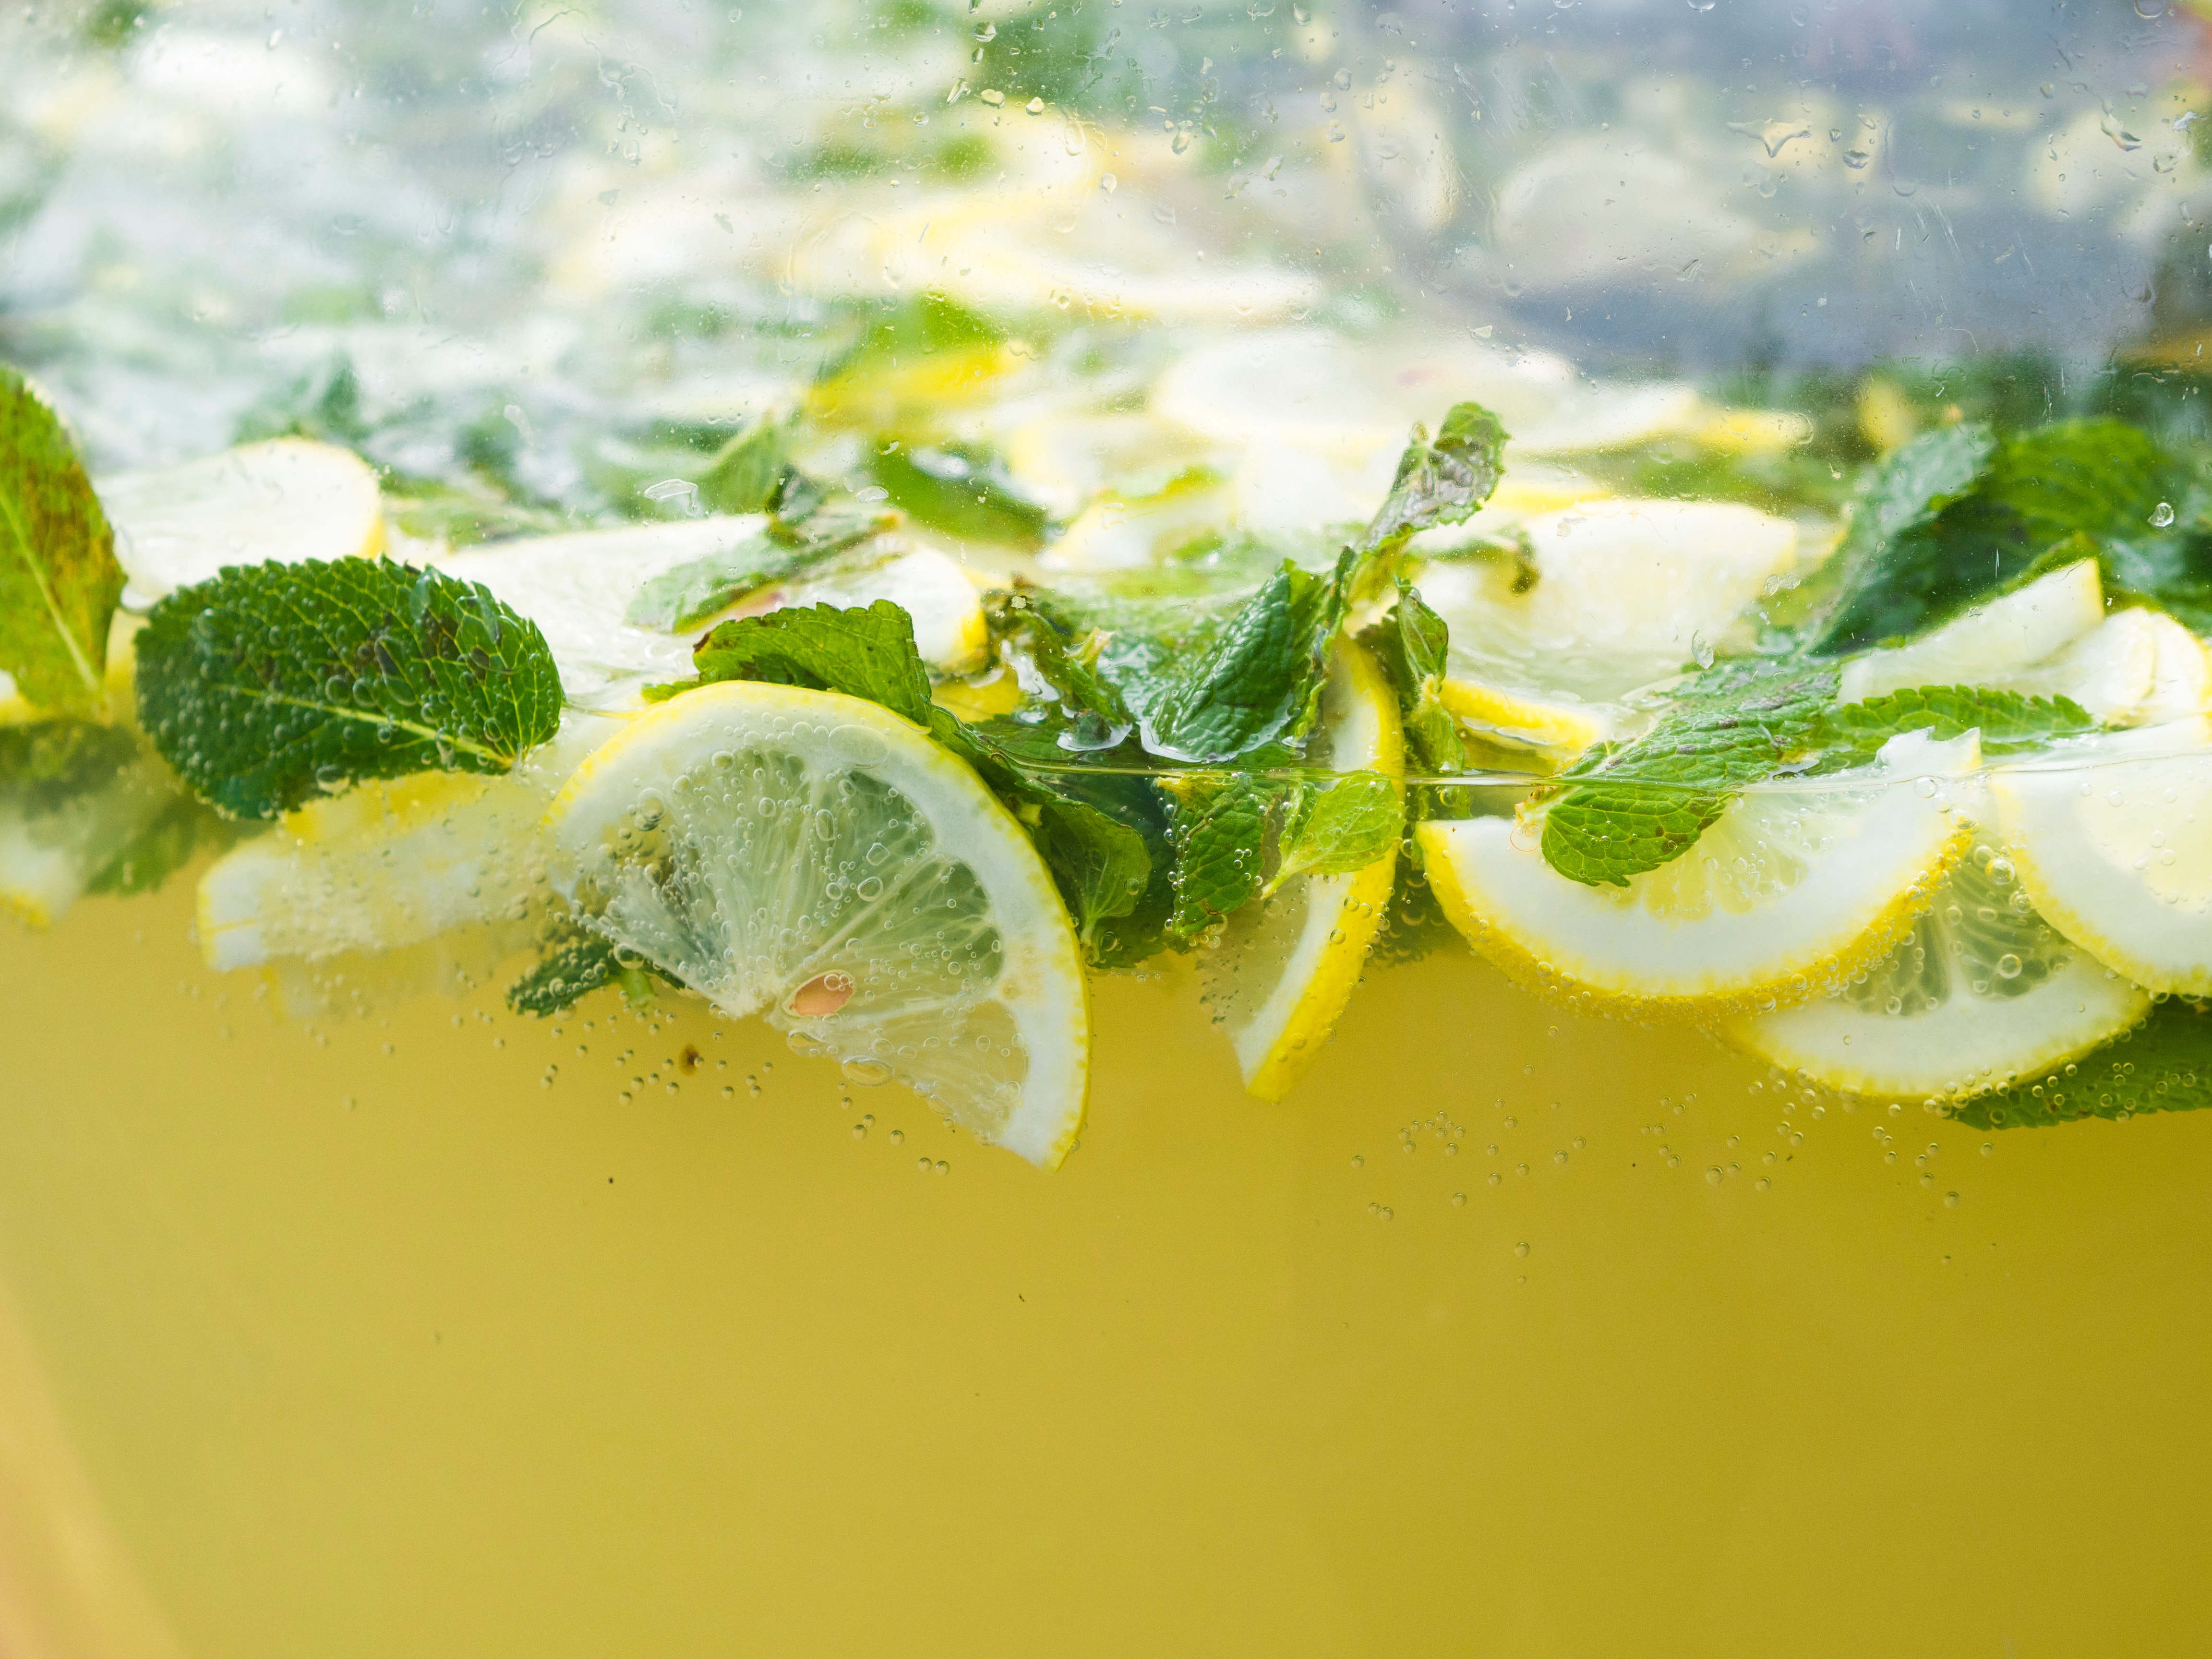 Cómo aprovechar para tu salud el té de limón con hierbabuena? | Salud | La  Revista | El Universo